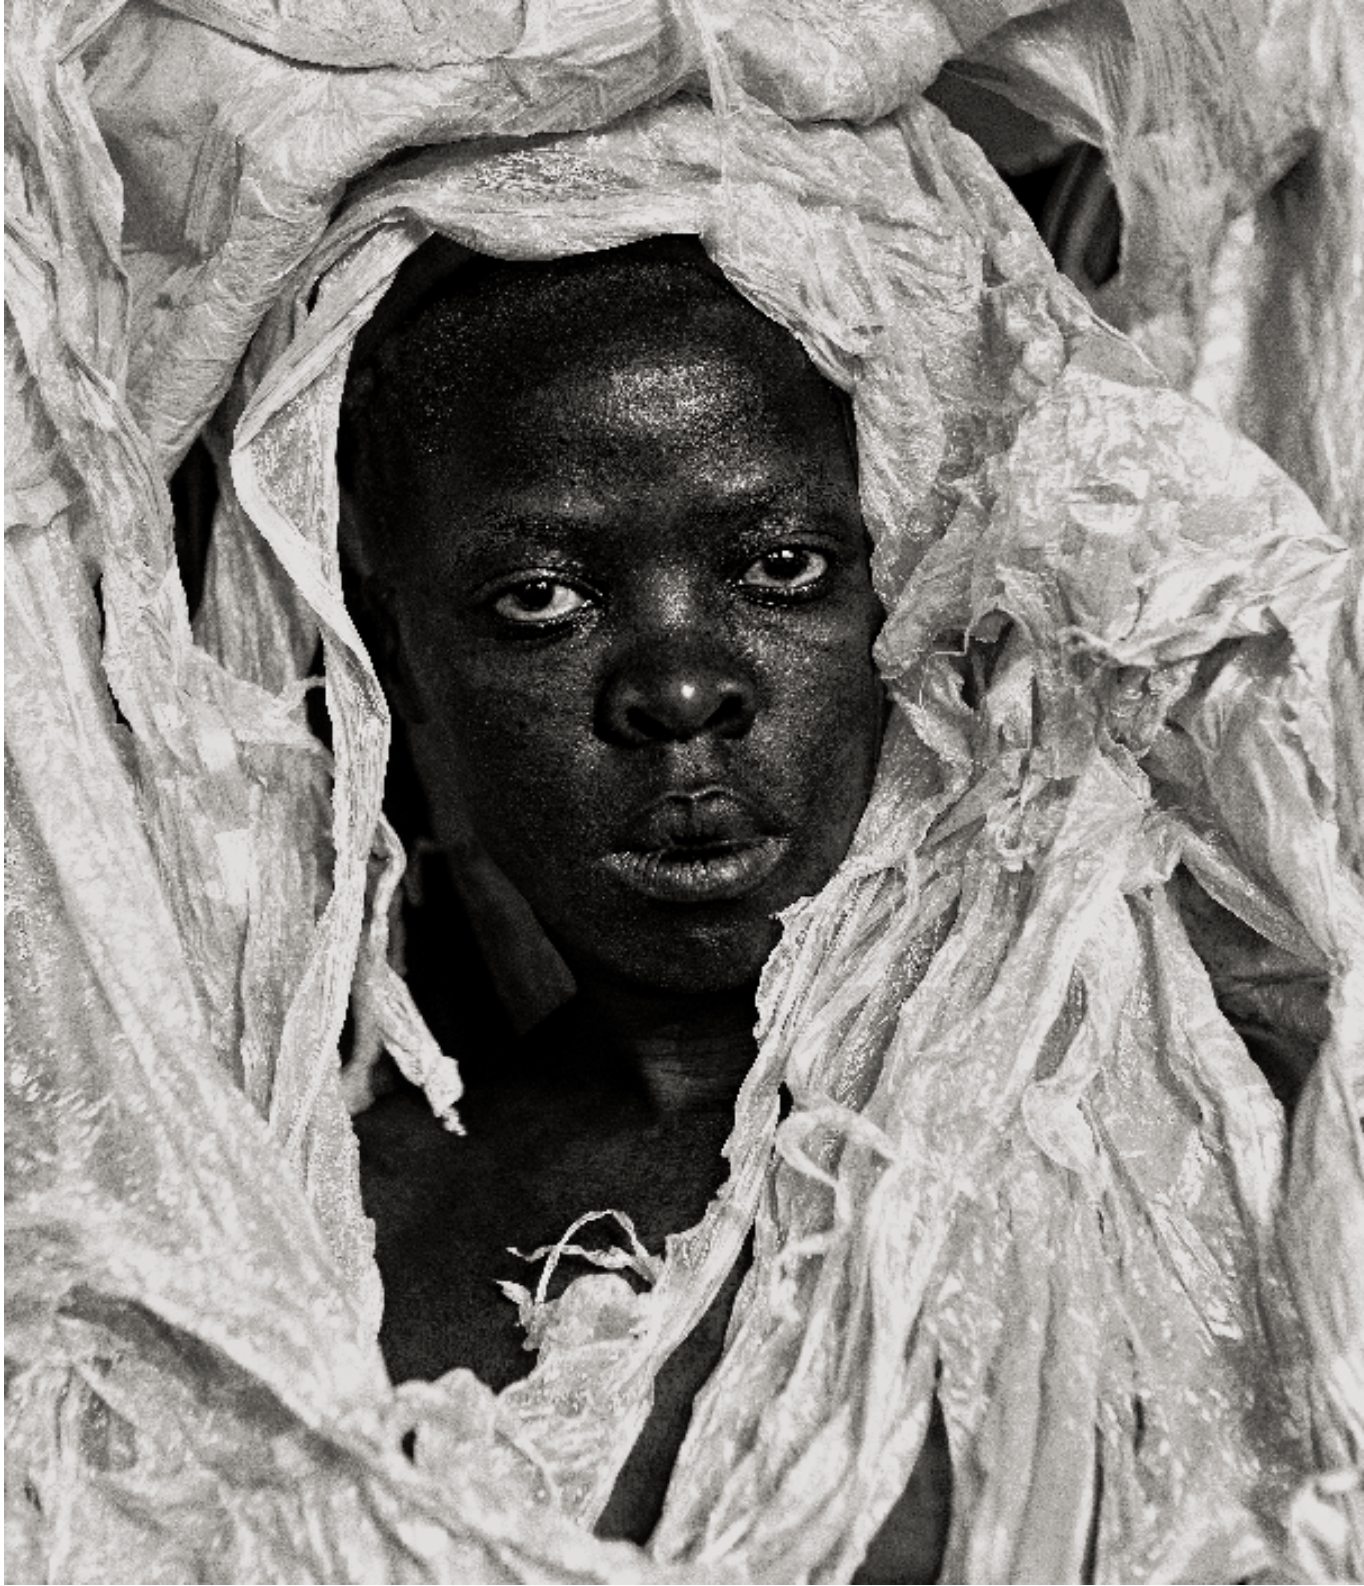 Extrait de “Zanele Muholi: Somnyama Ngonyama, Salut à toi, Lionne noire” (delpire & co, 2021) © Zanele Muholi, courtesy of Stevenson Gallery, Cape Town/Johannesburg, and Yancey Richardson Gallery, New York